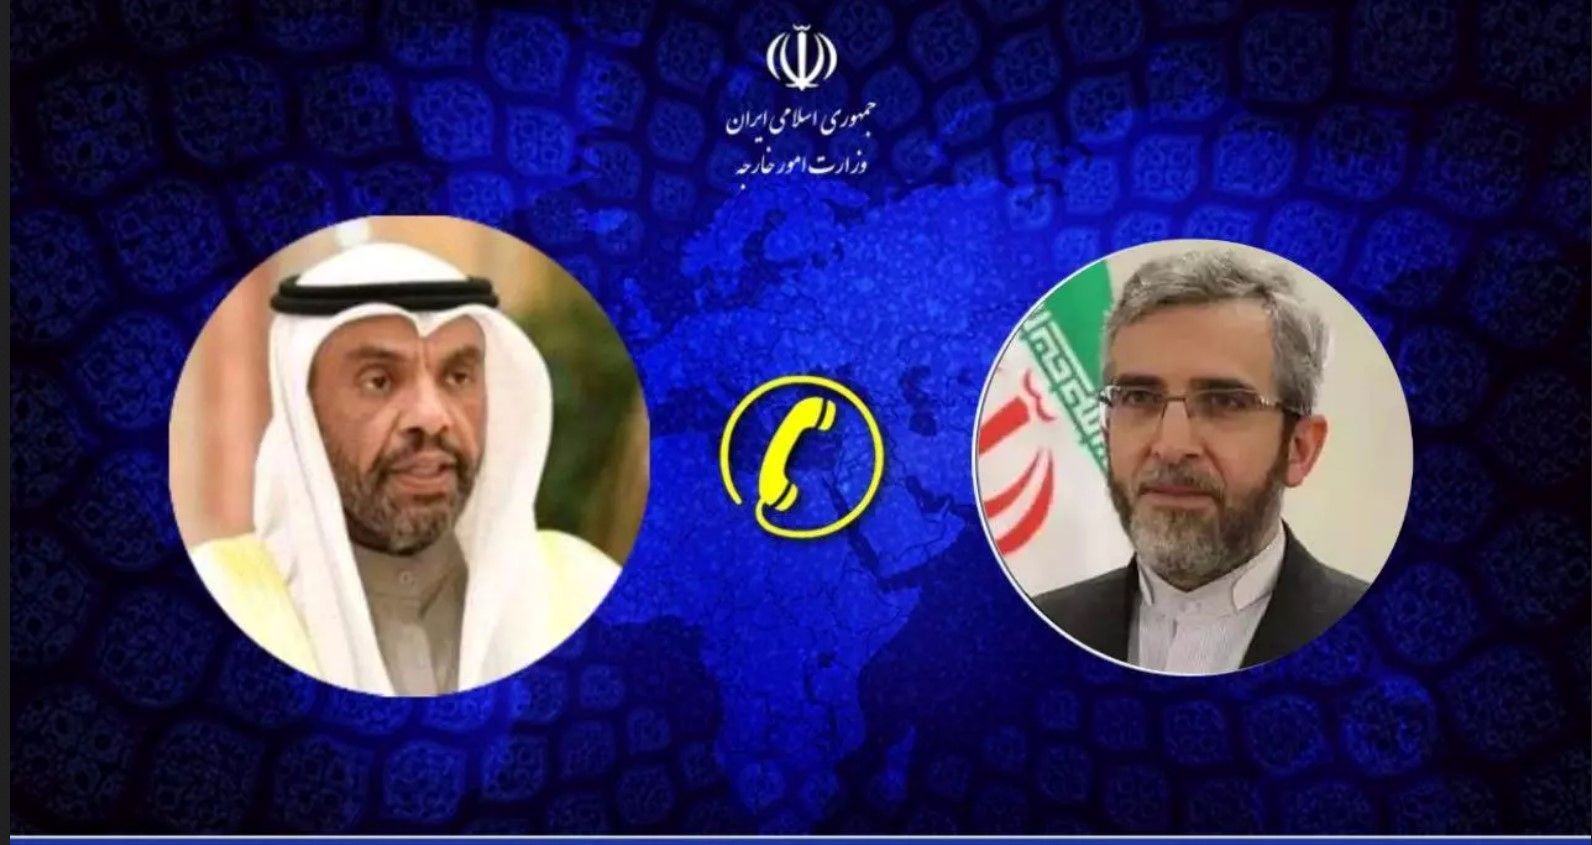 وزیر امور خارجه کویت در تماس تلفنی با سرپرست وزارت امور خارجه ایران، مراتب تسلیت خود را اعلام کرد.